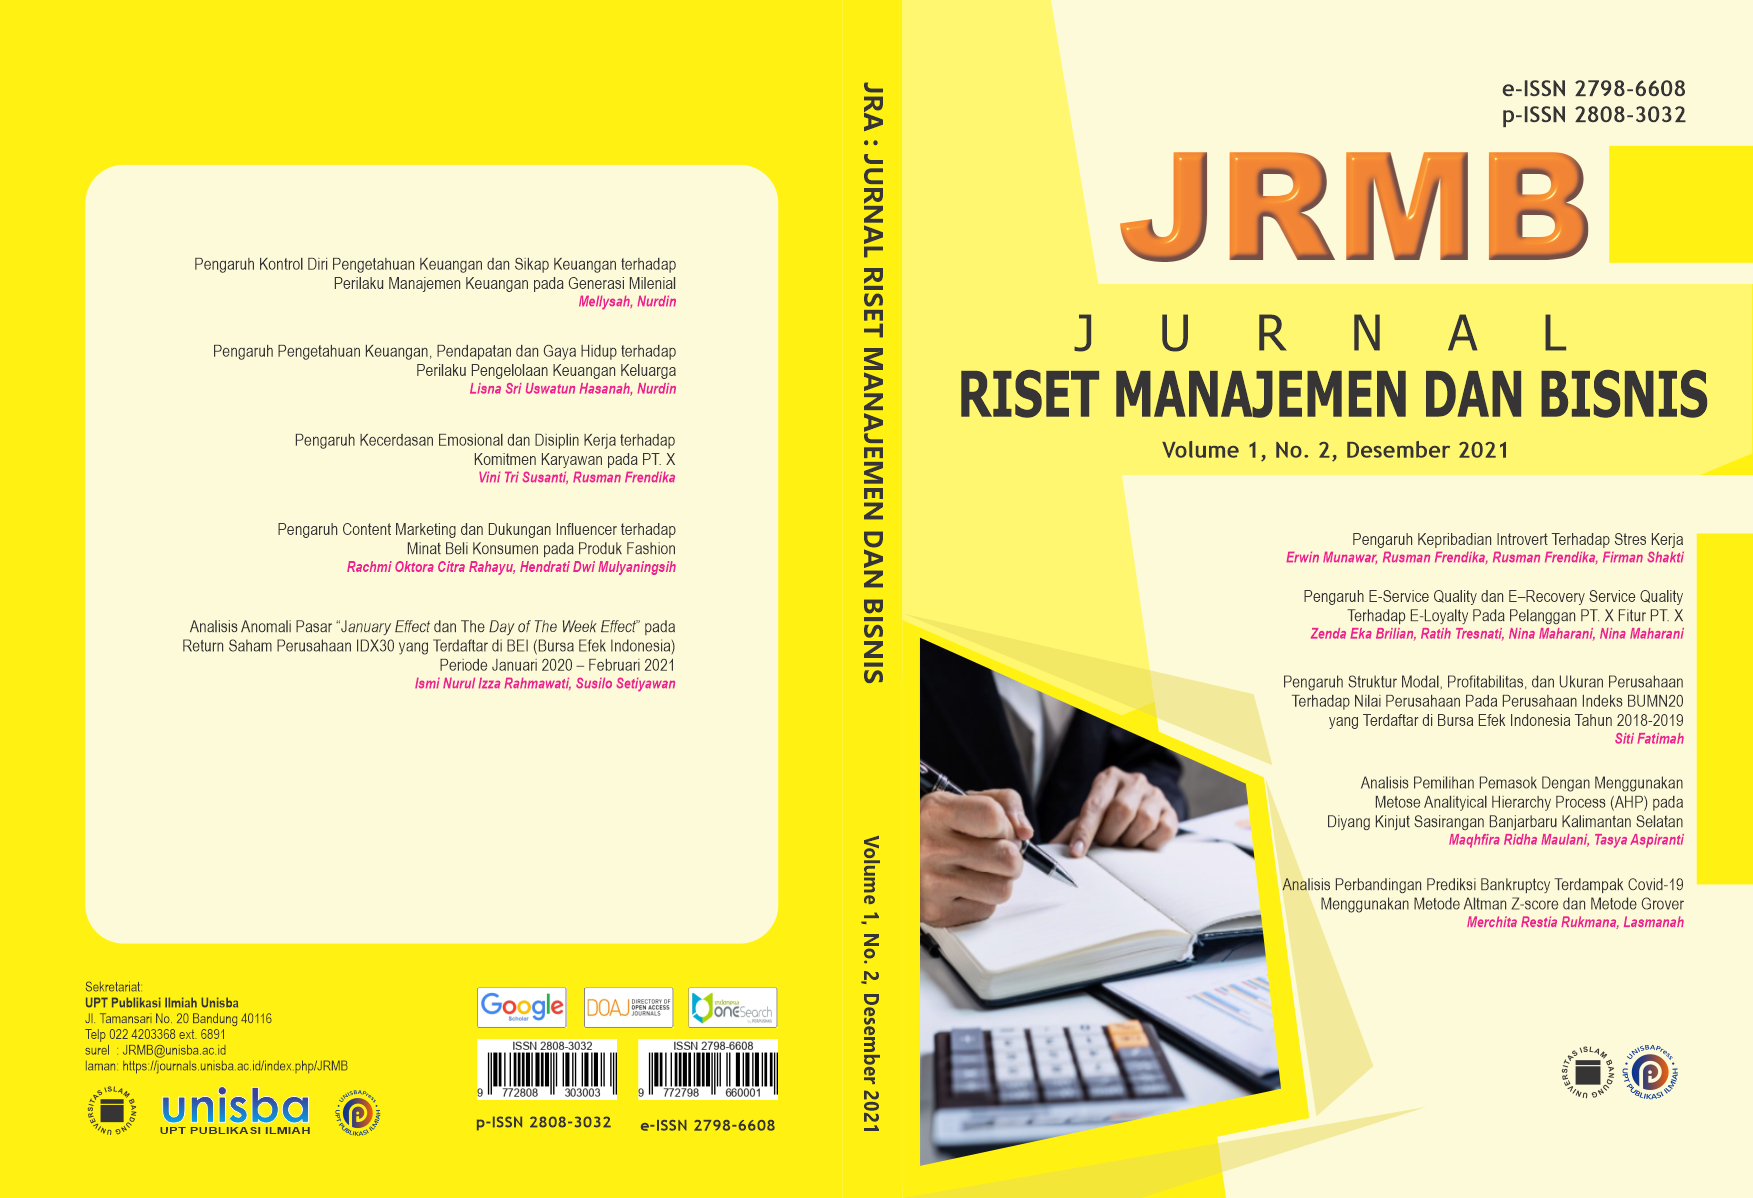 					View Volume 1, No. 2, Desember 2021 Jurnal Riset Manajemen dan Bisnis (JRMB)
				